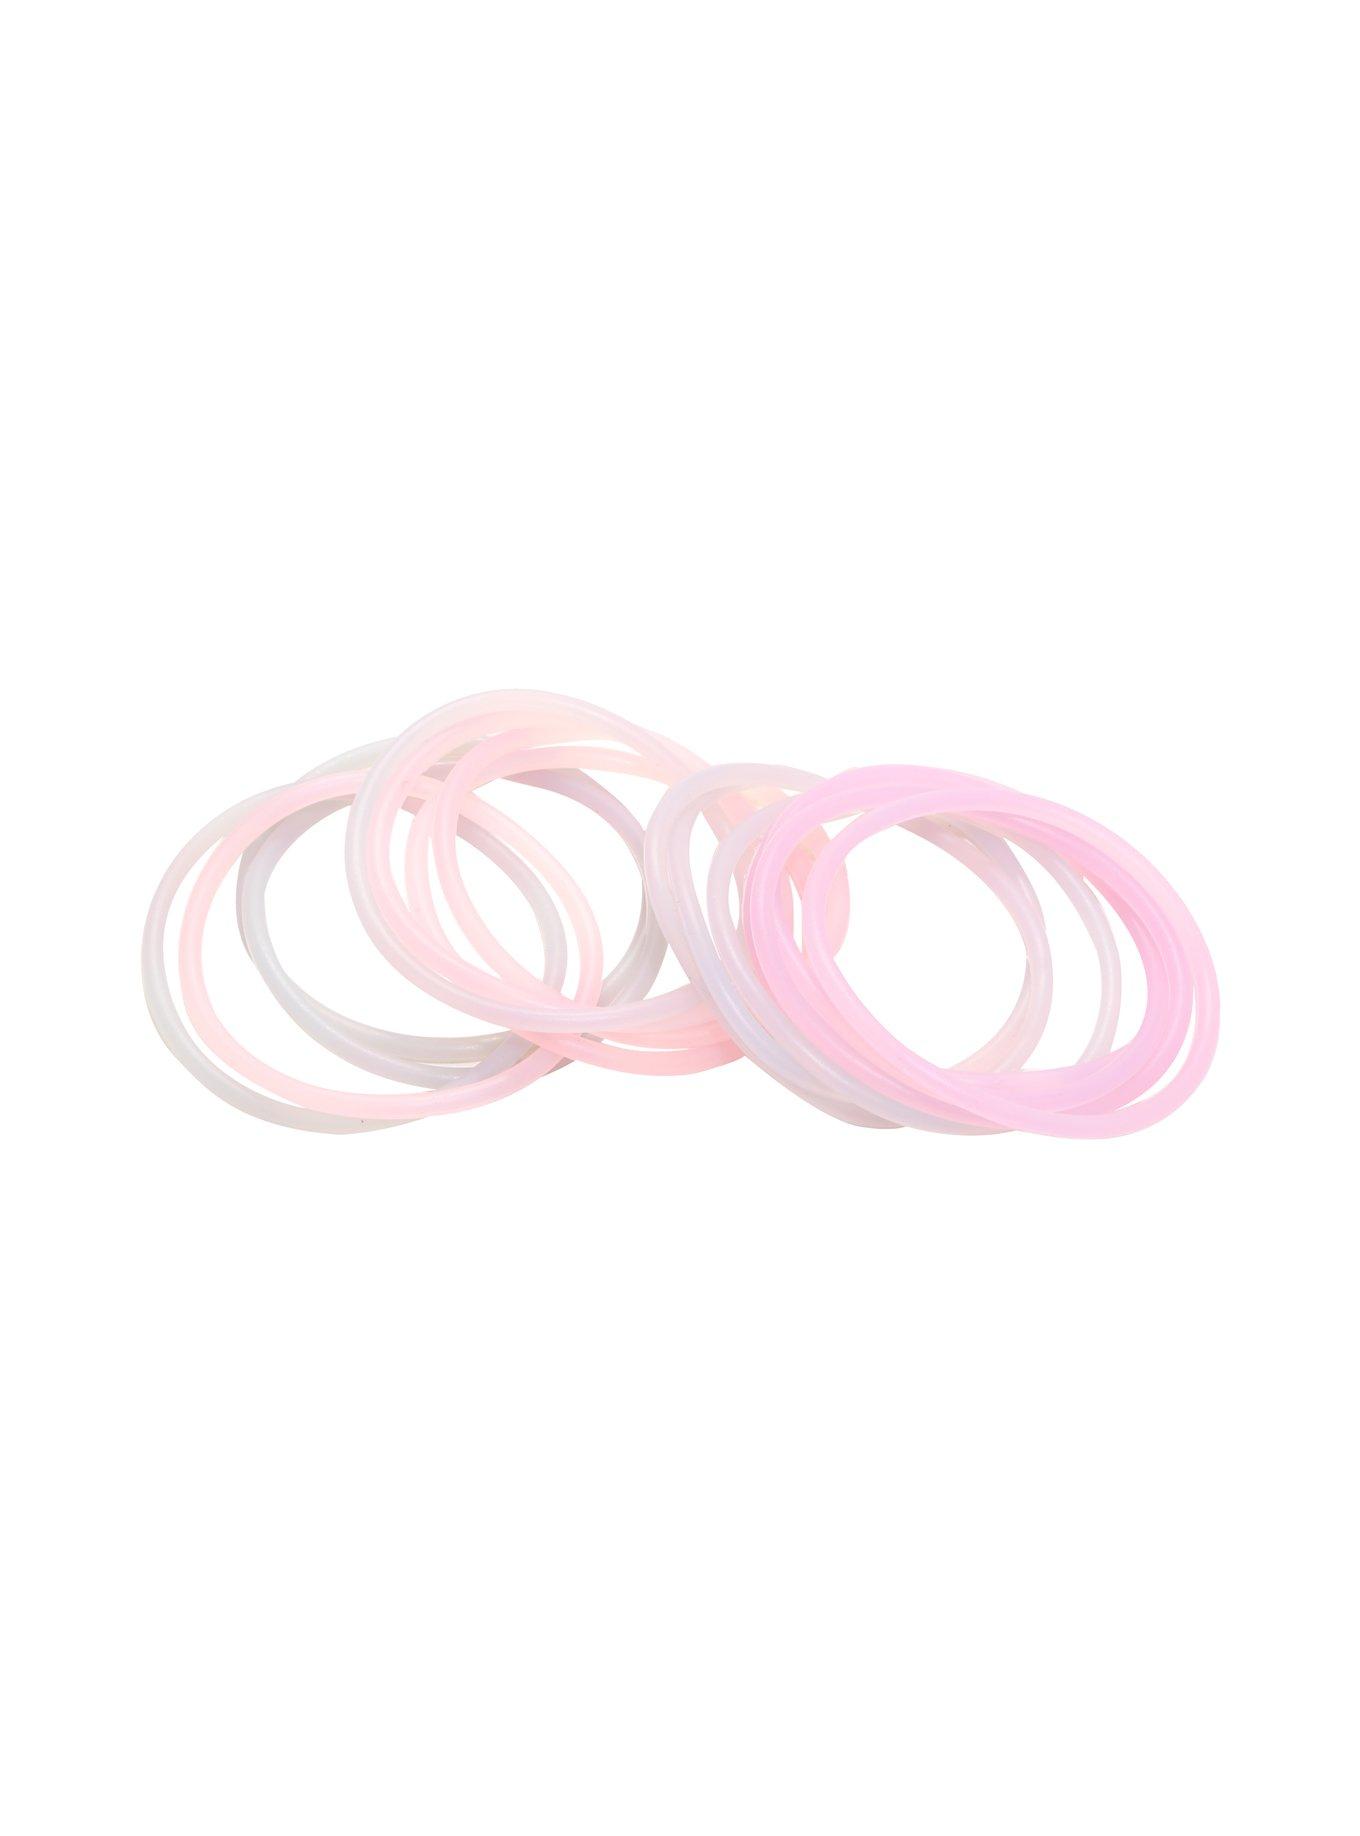 Blackheart Pink & White Rubber Bracelet Set, , alternate